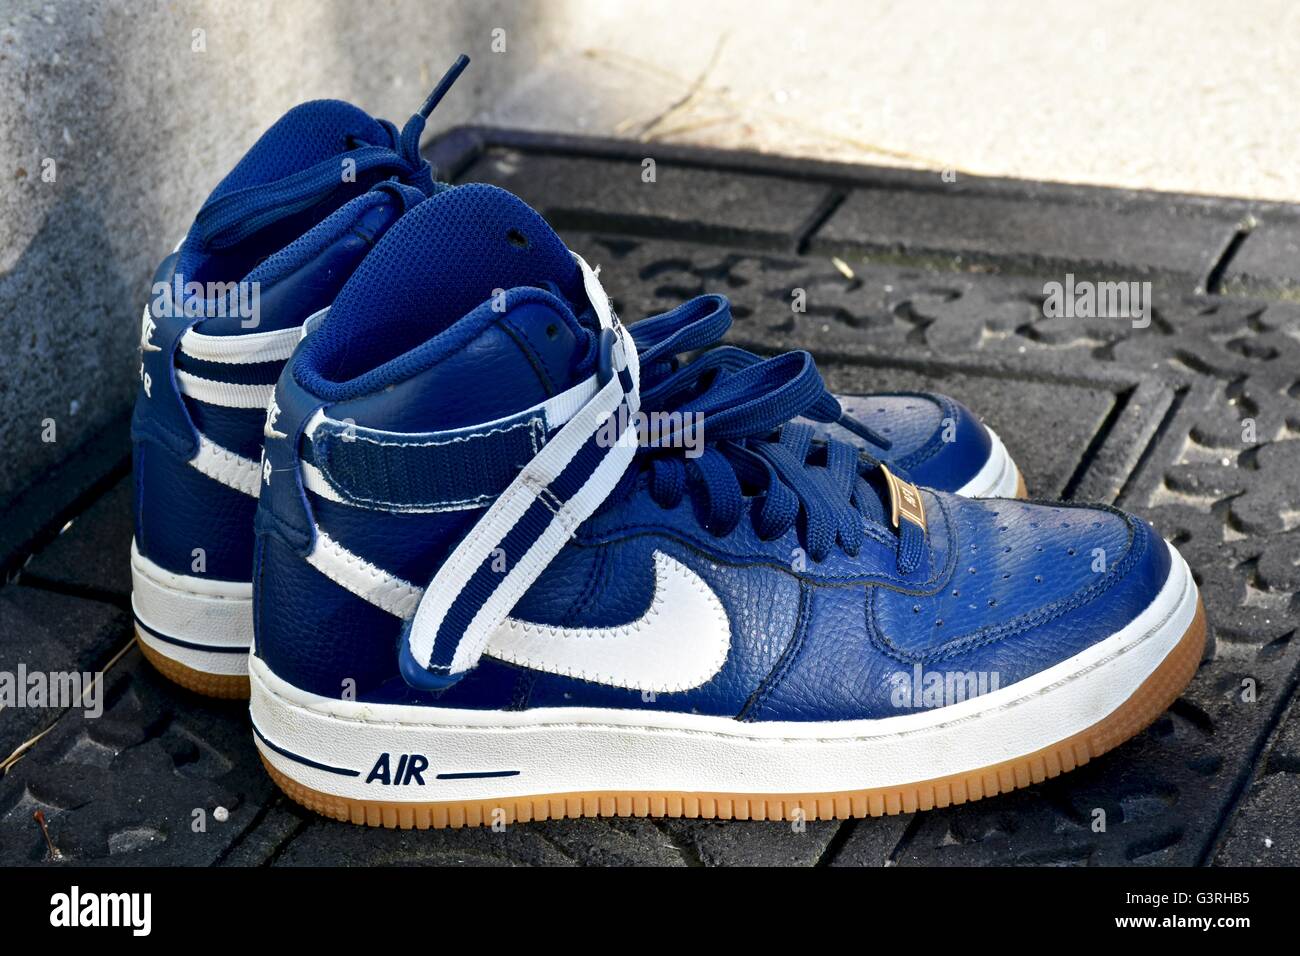 Ein paar blaue Nike Schuhe sitzen auf einer Fußmatte vor einem Haus  Stockfotografie - Alamy